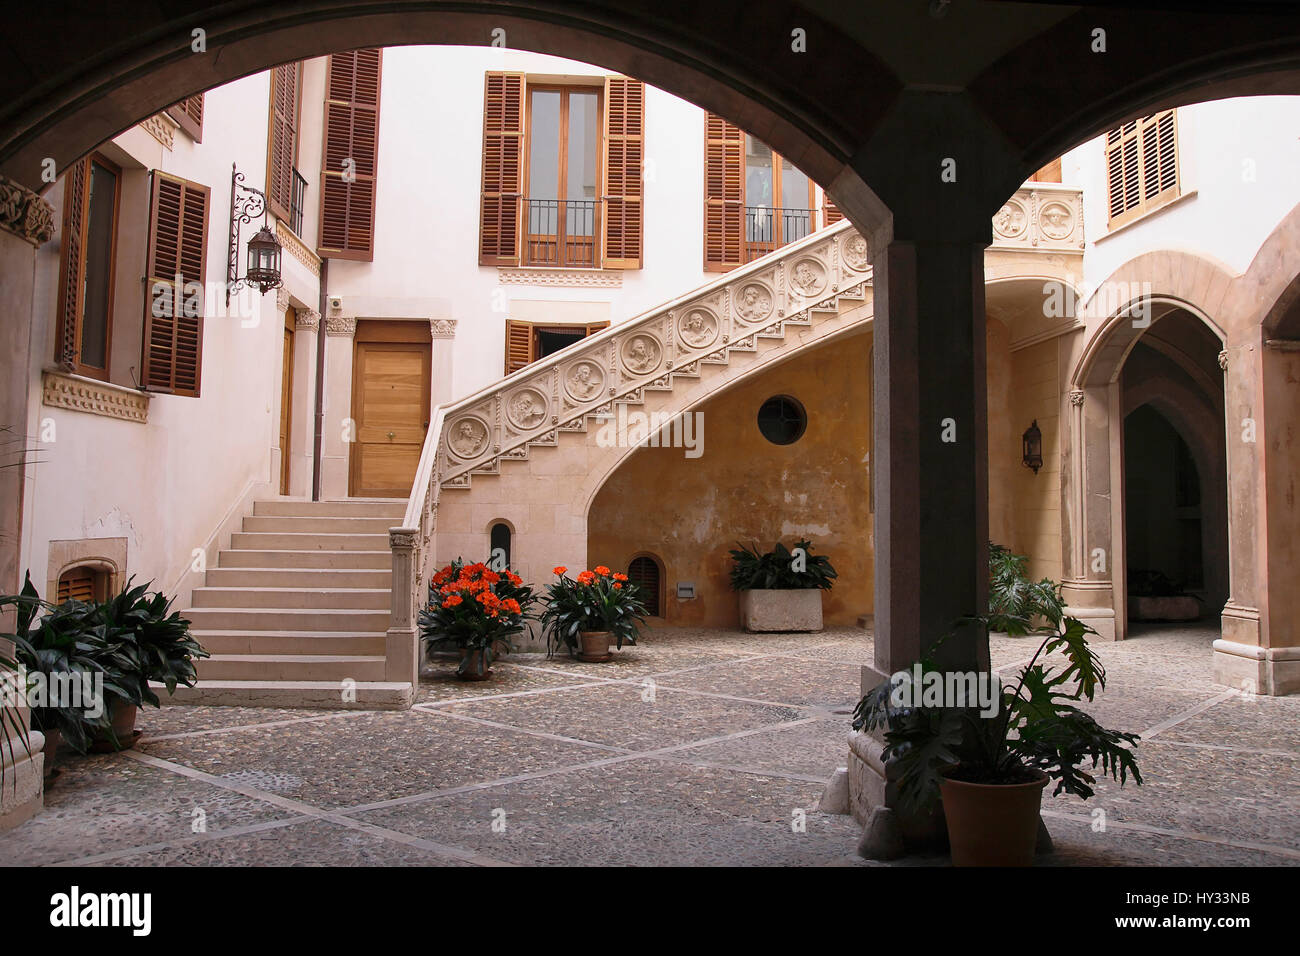 L'Espagne, Îles Baléares, Majorque, Palma, escaliers en pierre avec des chiffres bas-relief dans une cour intérieure de la vieille ville. Banque D'Images